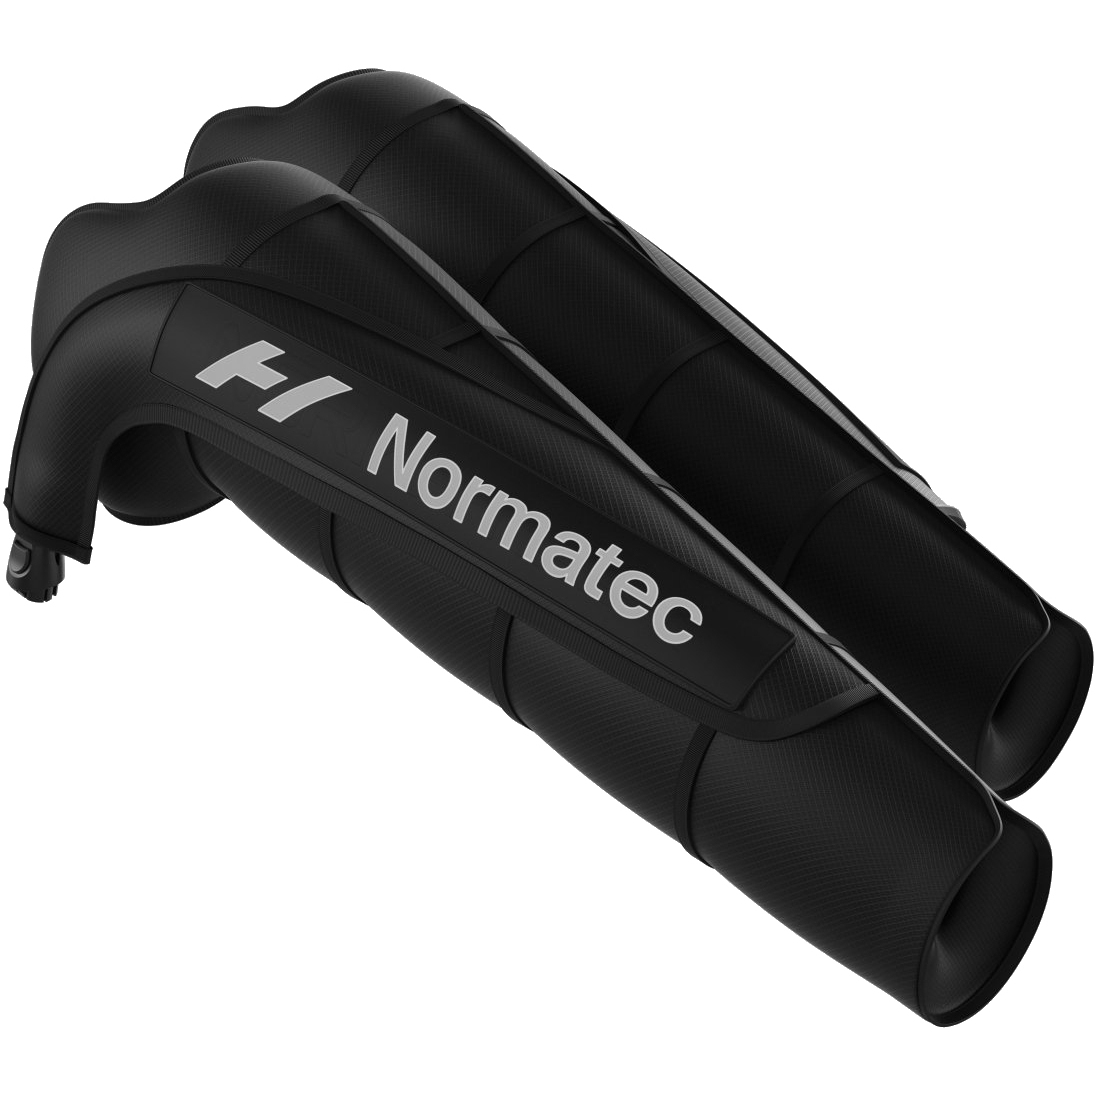 Image de Hyperice Attache pour Bras - Normatec 3 Arm Attachments - Paire - noir